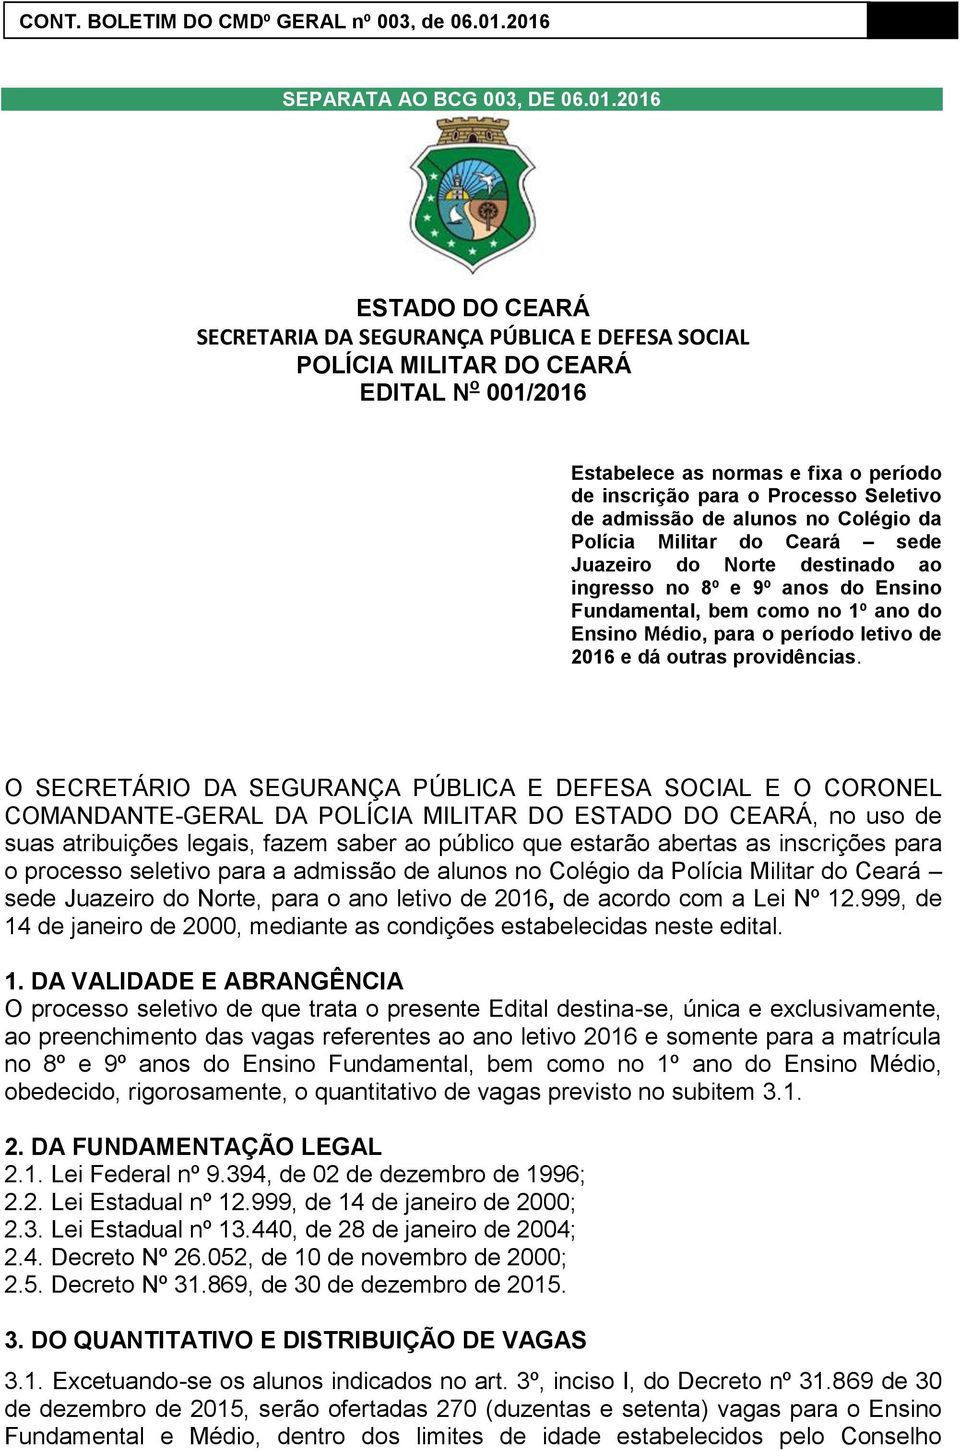 admissão de alunos no Colégio da Polícia Militar do Ceará sede Juazeiro do Norte destinado ao ingresso no 8º e 9º anos do Ensino Fundamental, bem como no 1º ano do Ensino Médio, para o período letivo